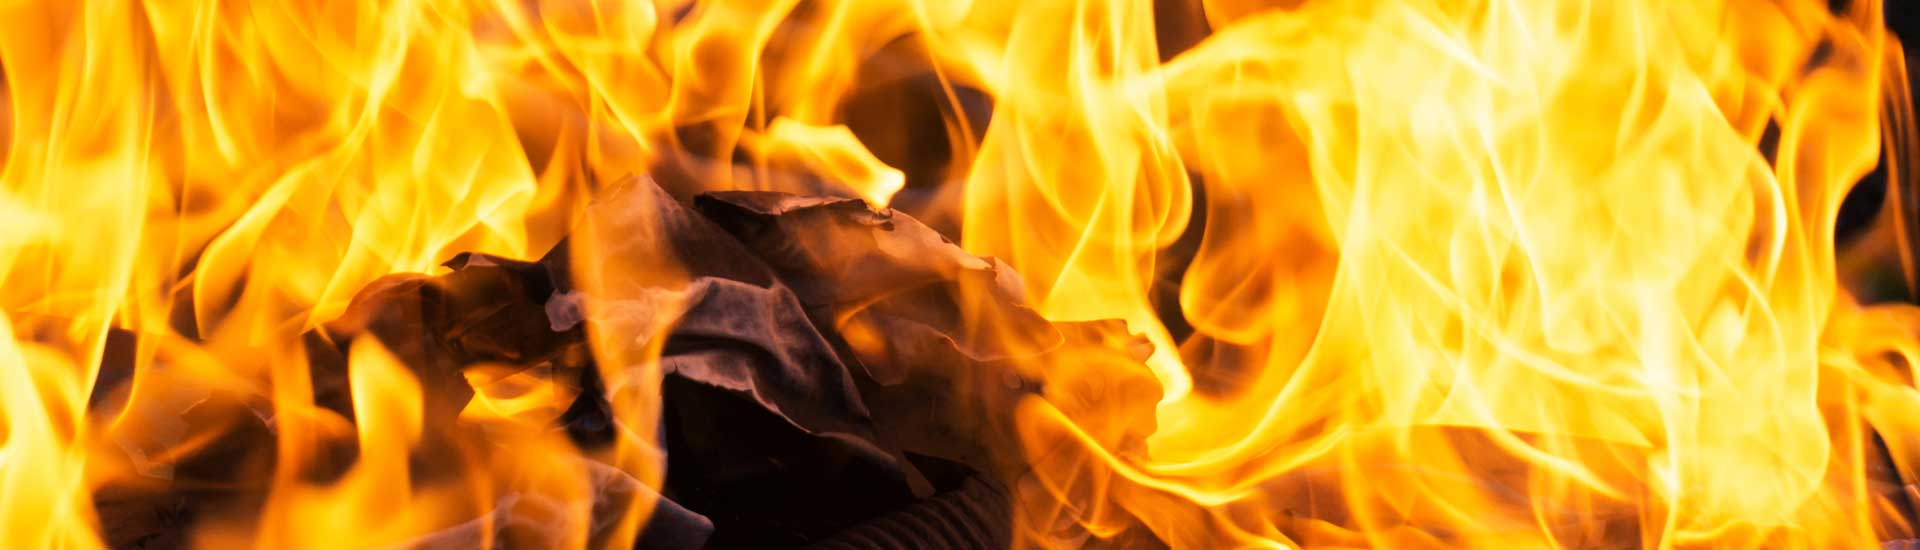 Photo: Image of Burning Fire